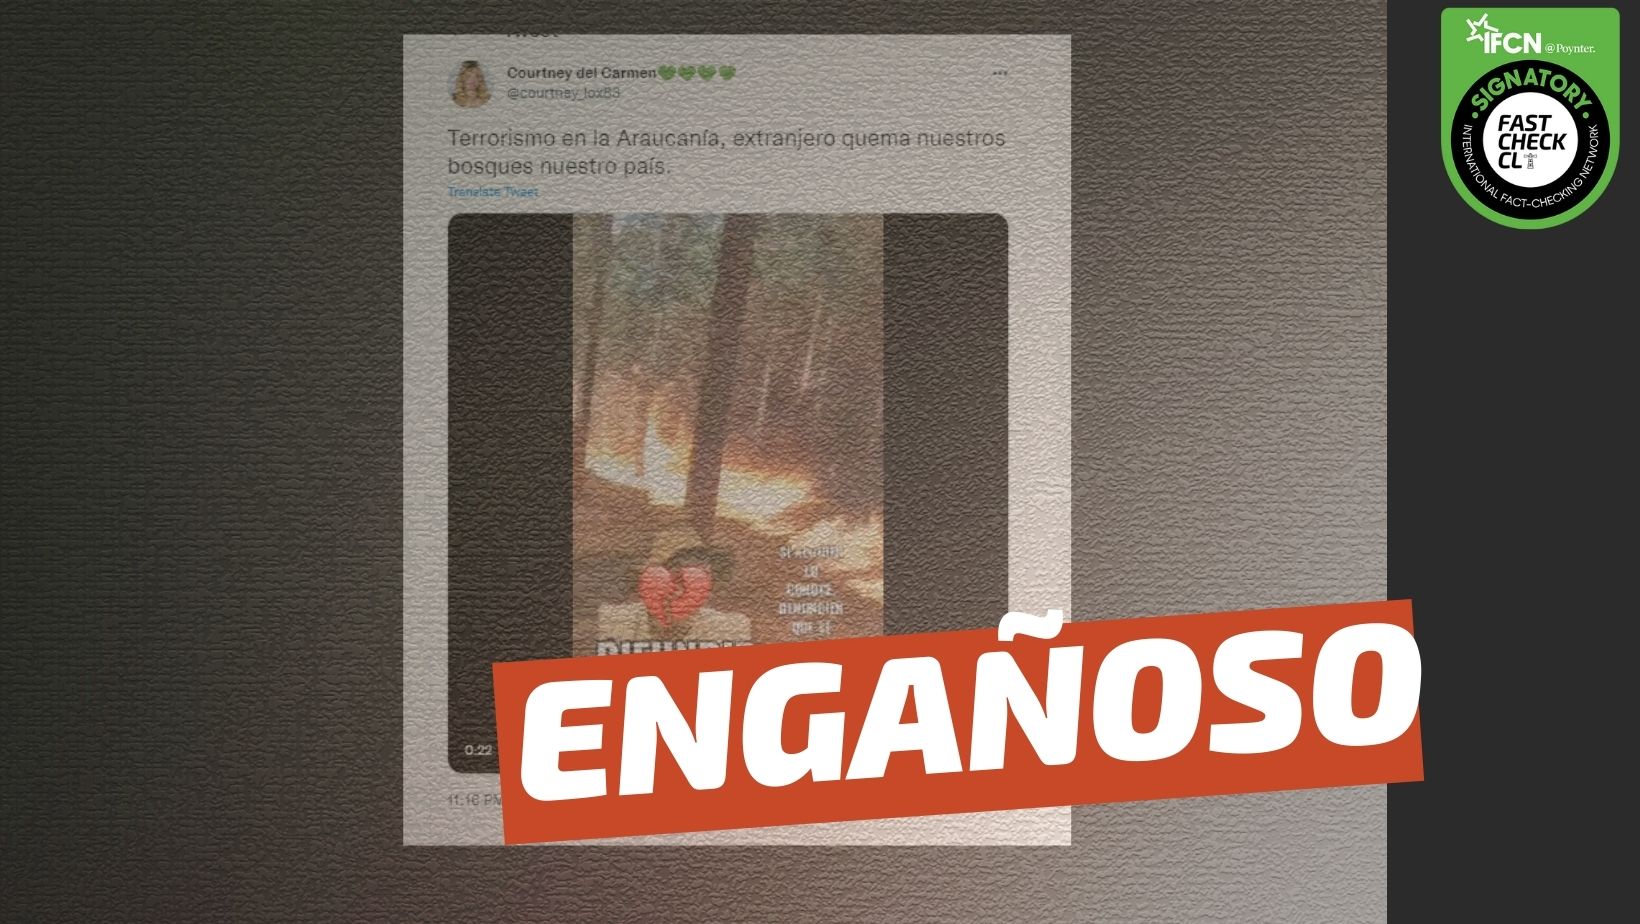 You are currently viewing (Video) “Terrorismo en la Araucanía, extranjero quema nuestros bosques en nuestro país”: #Engañoso